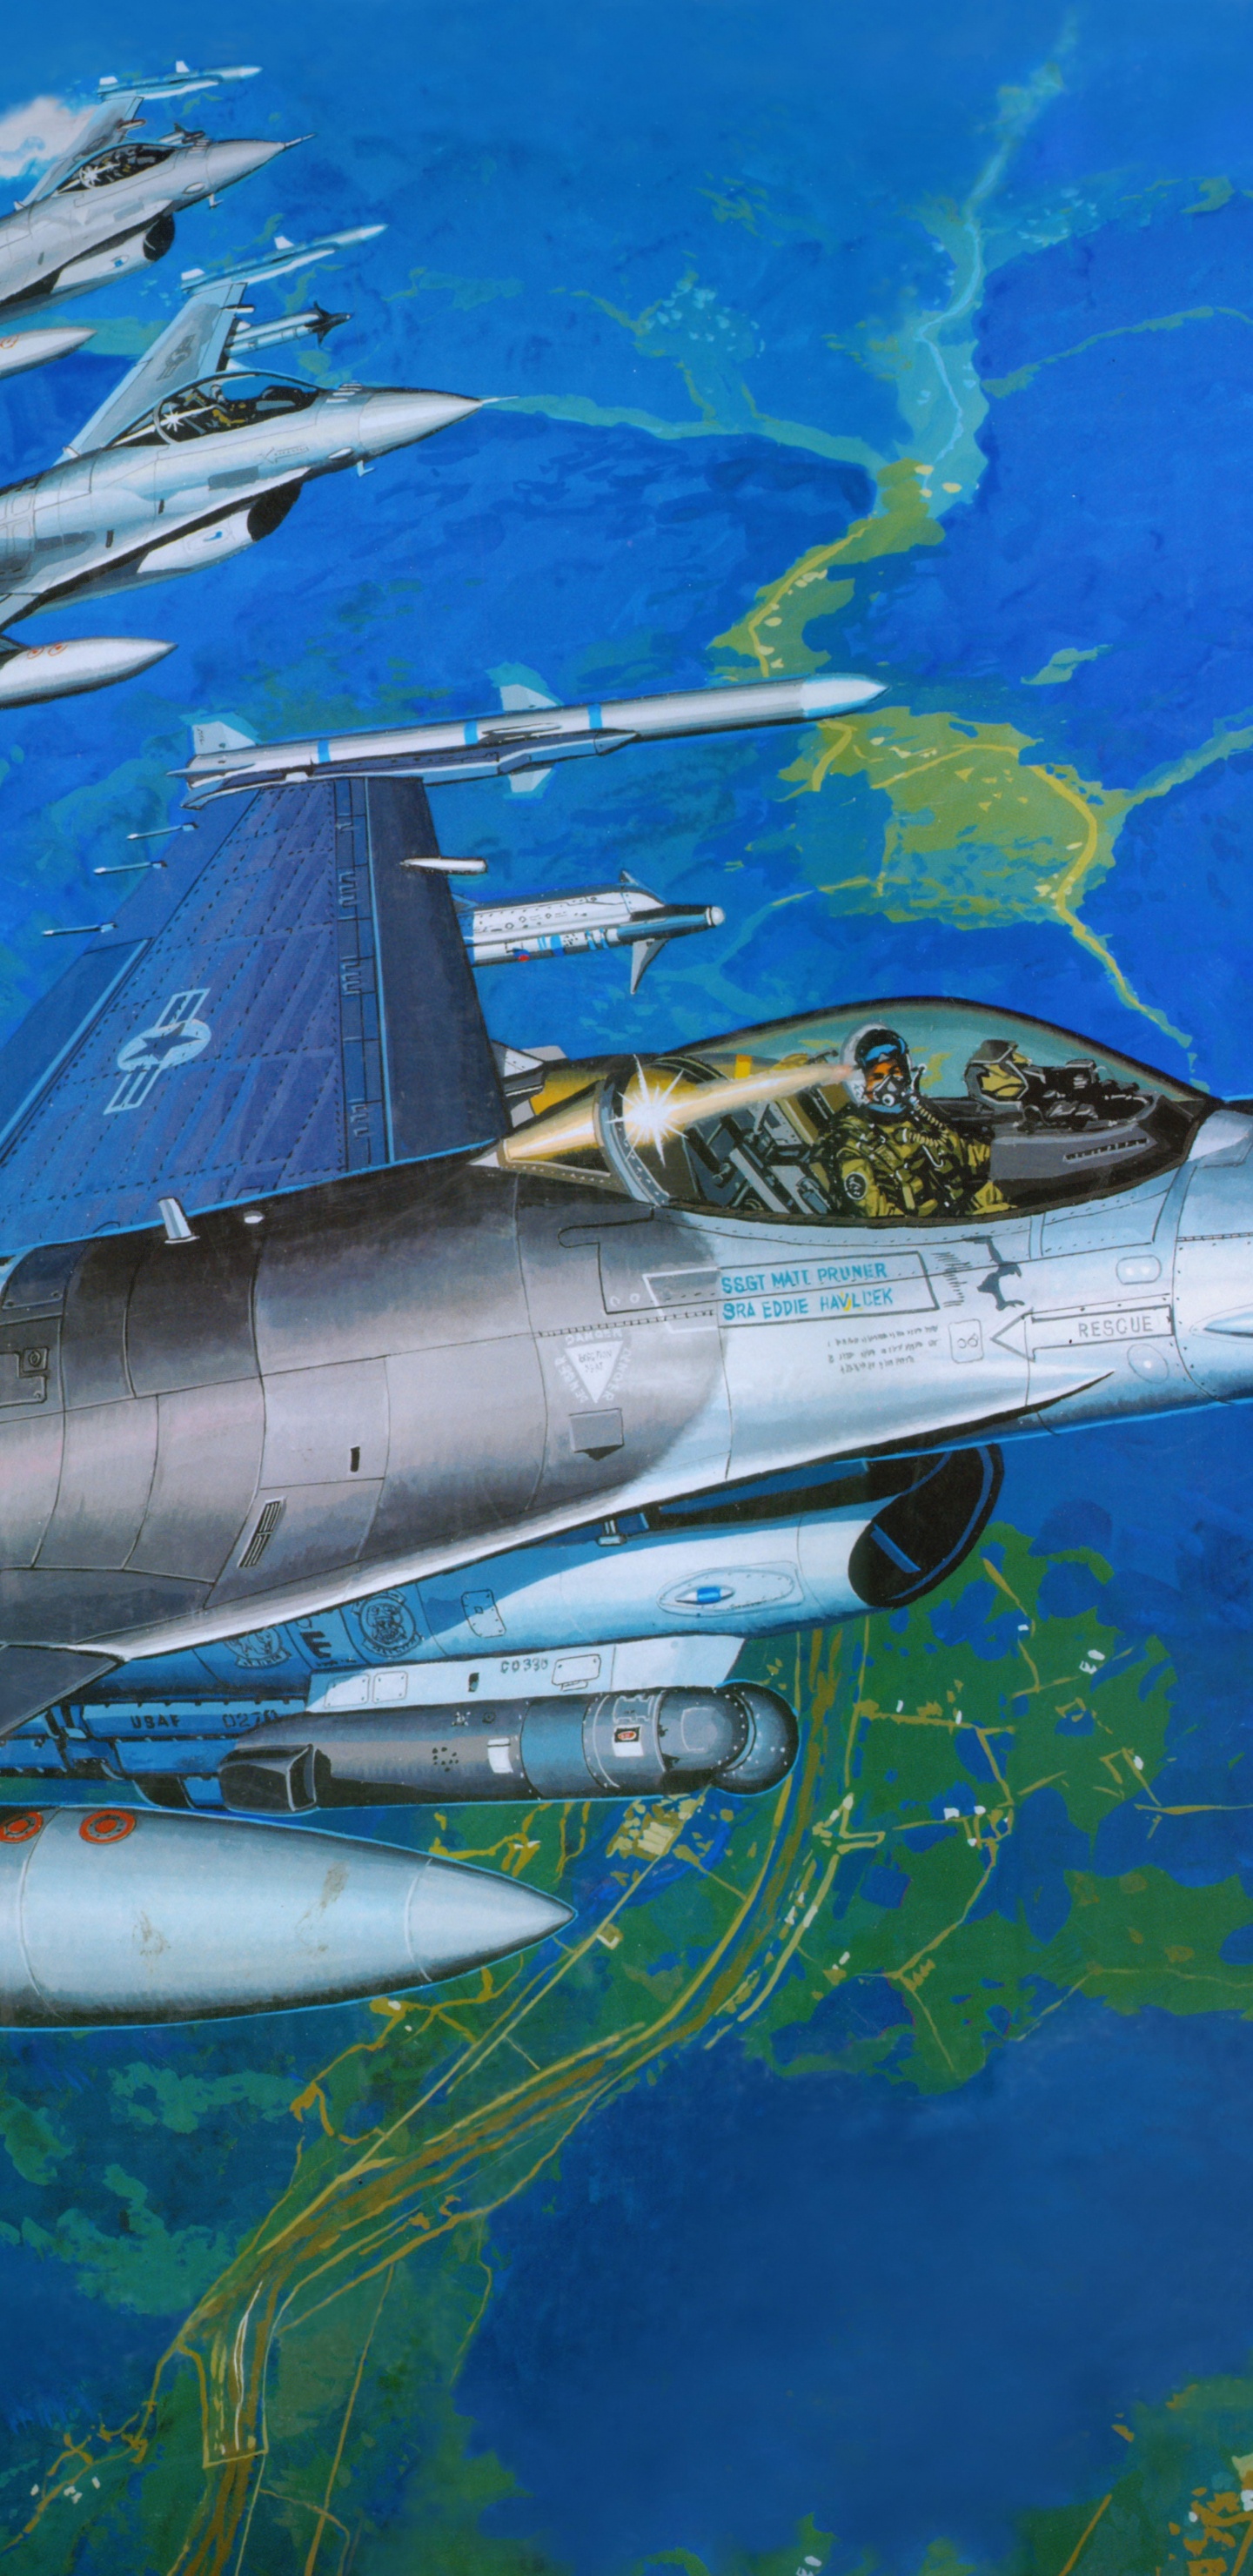 Avion à Réaction Blanc et Noir Survolant le Ciel Vert et Bleu Pendant la Journée. Wallpaper in 1440x2960 Resolution